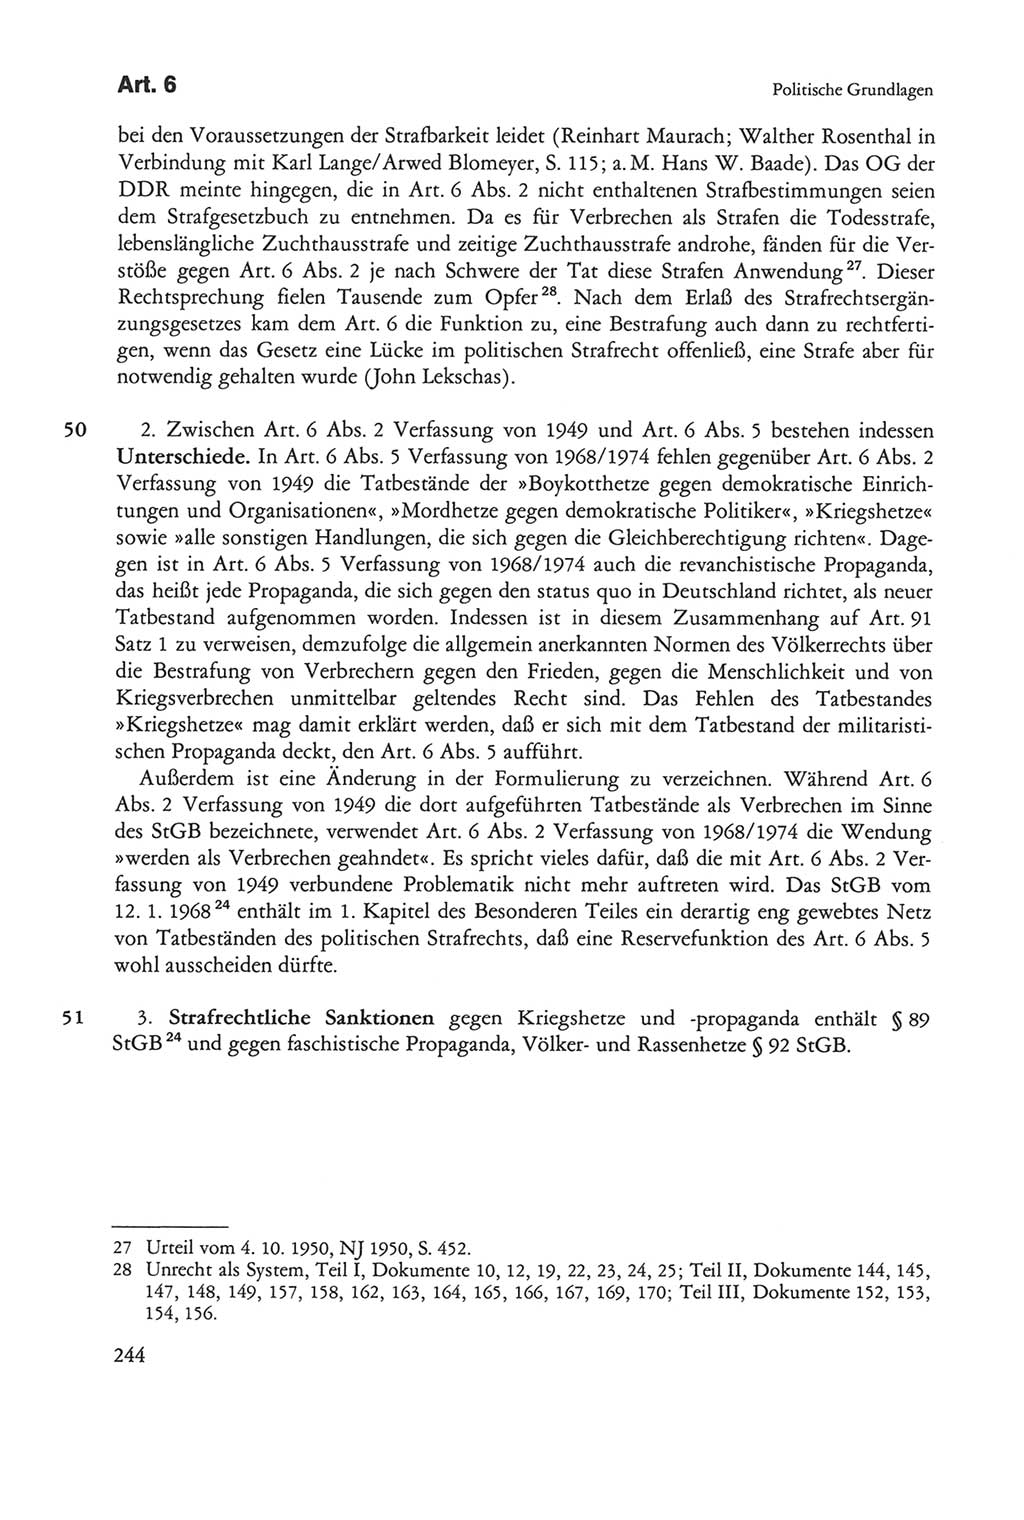 Die sozialistische Verfassung der Deutschen Demokratischen Republik (DDR), Kommentar mit einem Nachtrag 1997, Seite 244 (Soz. Verf. DDR Komm. Nachtr. 1997, S. 244)